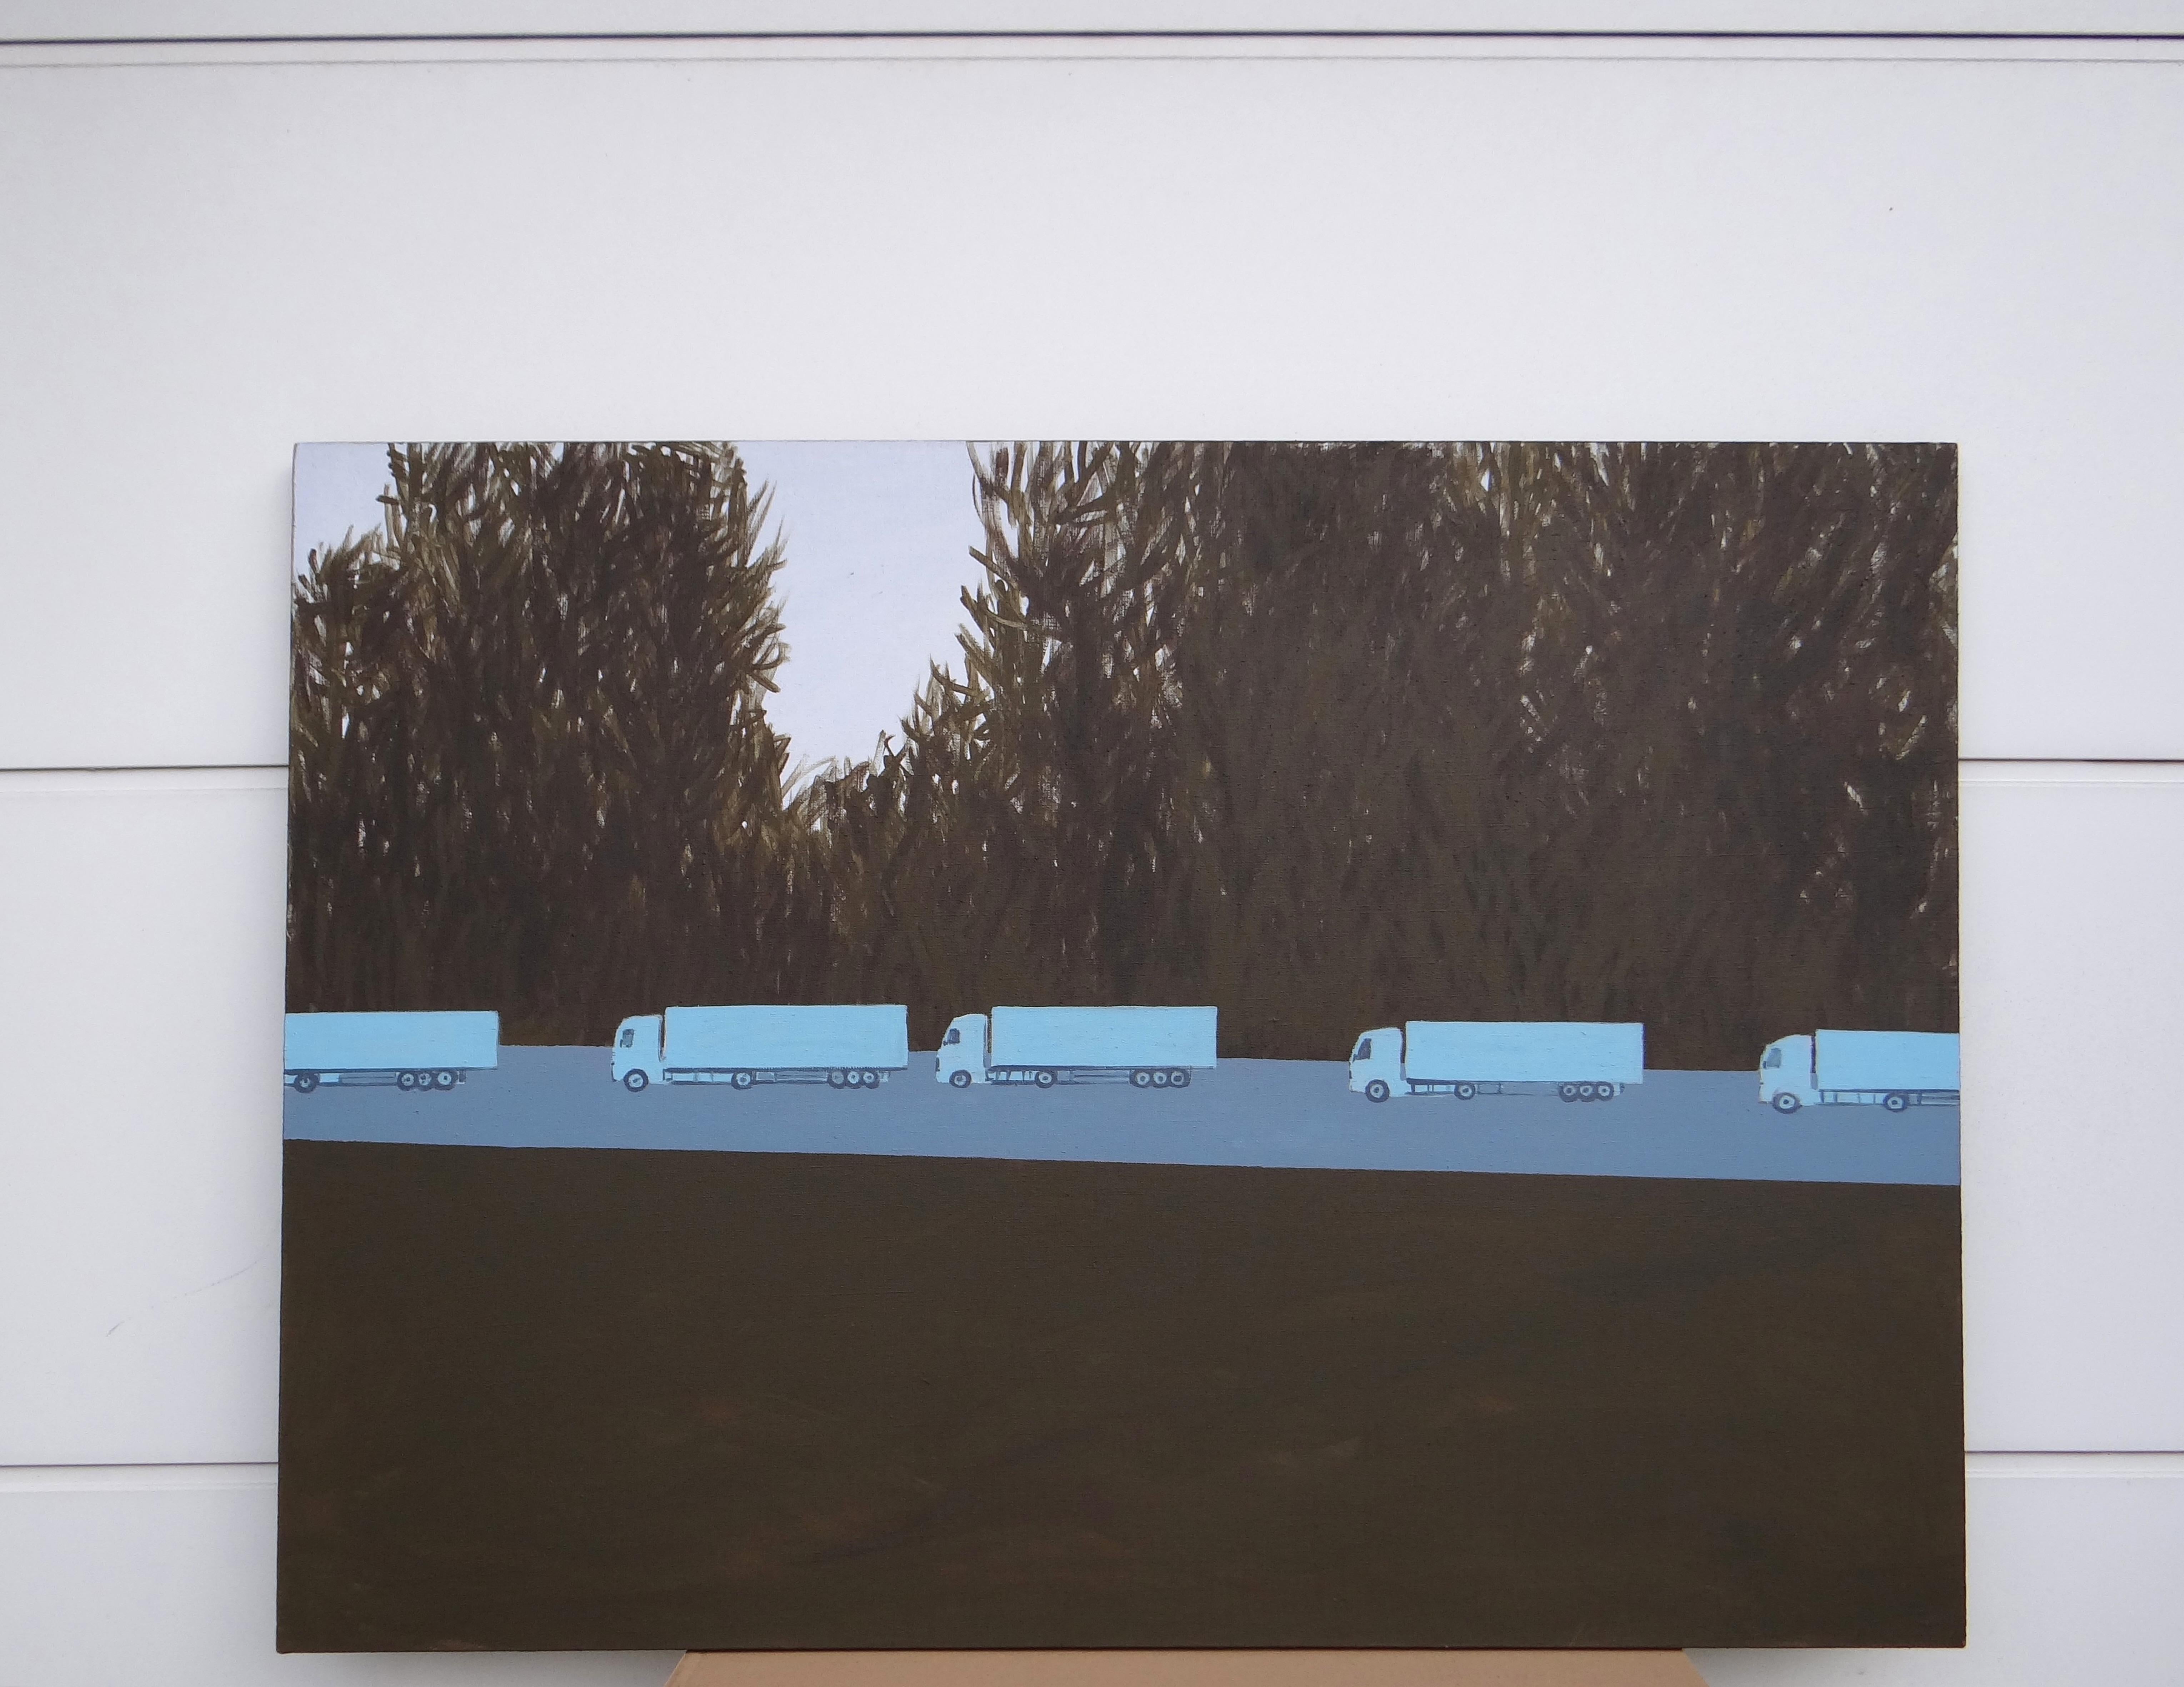 Colonne de camions 2 - Peinture expressive contemporaine de paysage, avenue des arbres - Painting de Joanna Mrozowska